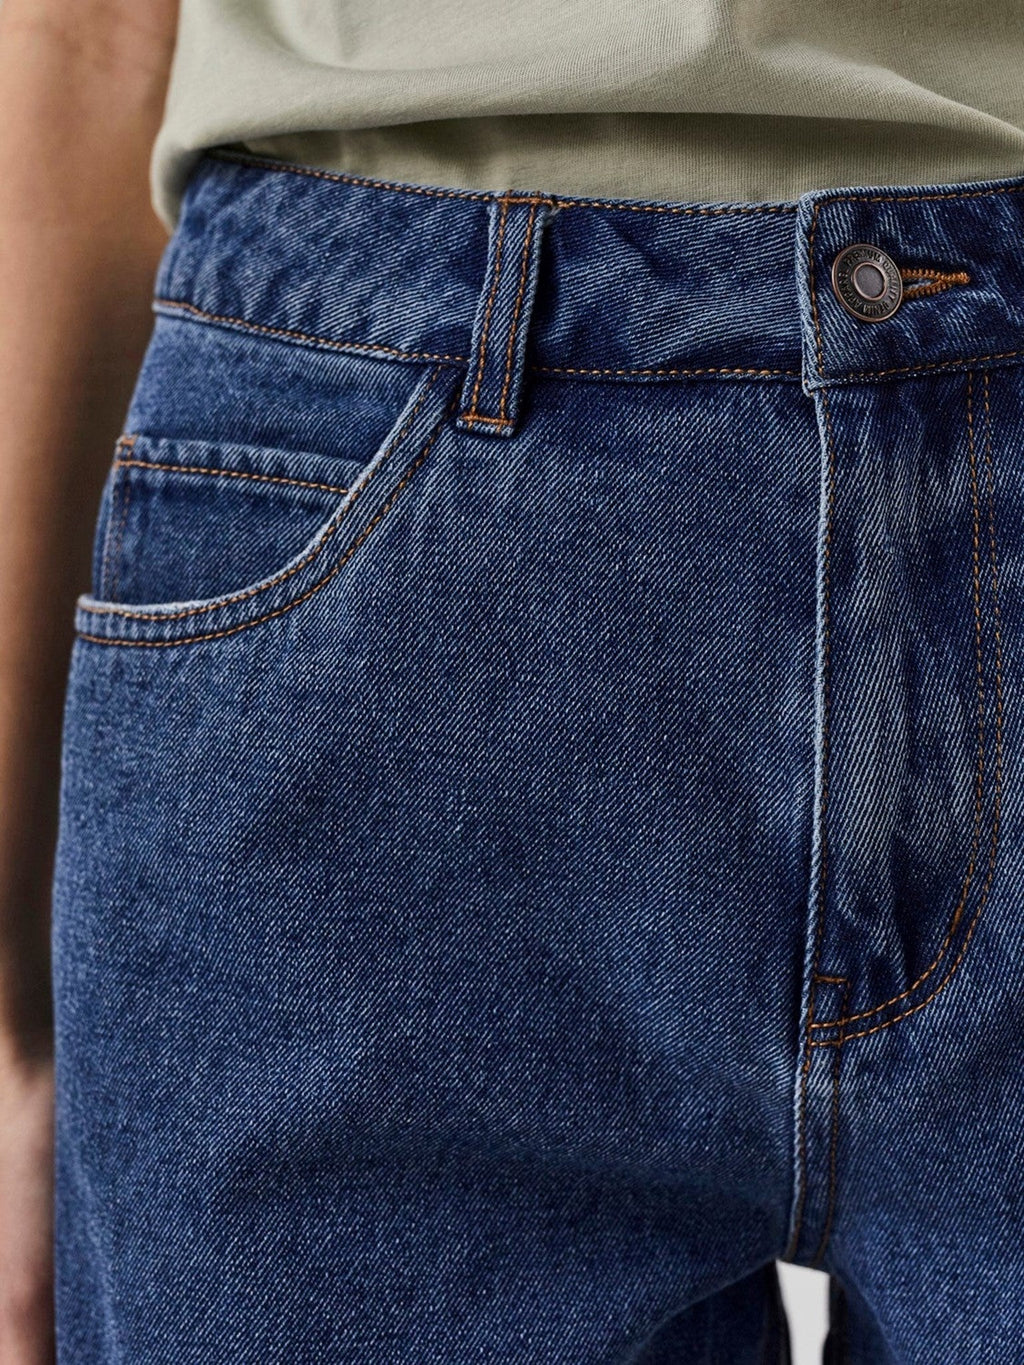 Laisvas Shorts - Vidutiniškai mėlynas džinsinis audinys